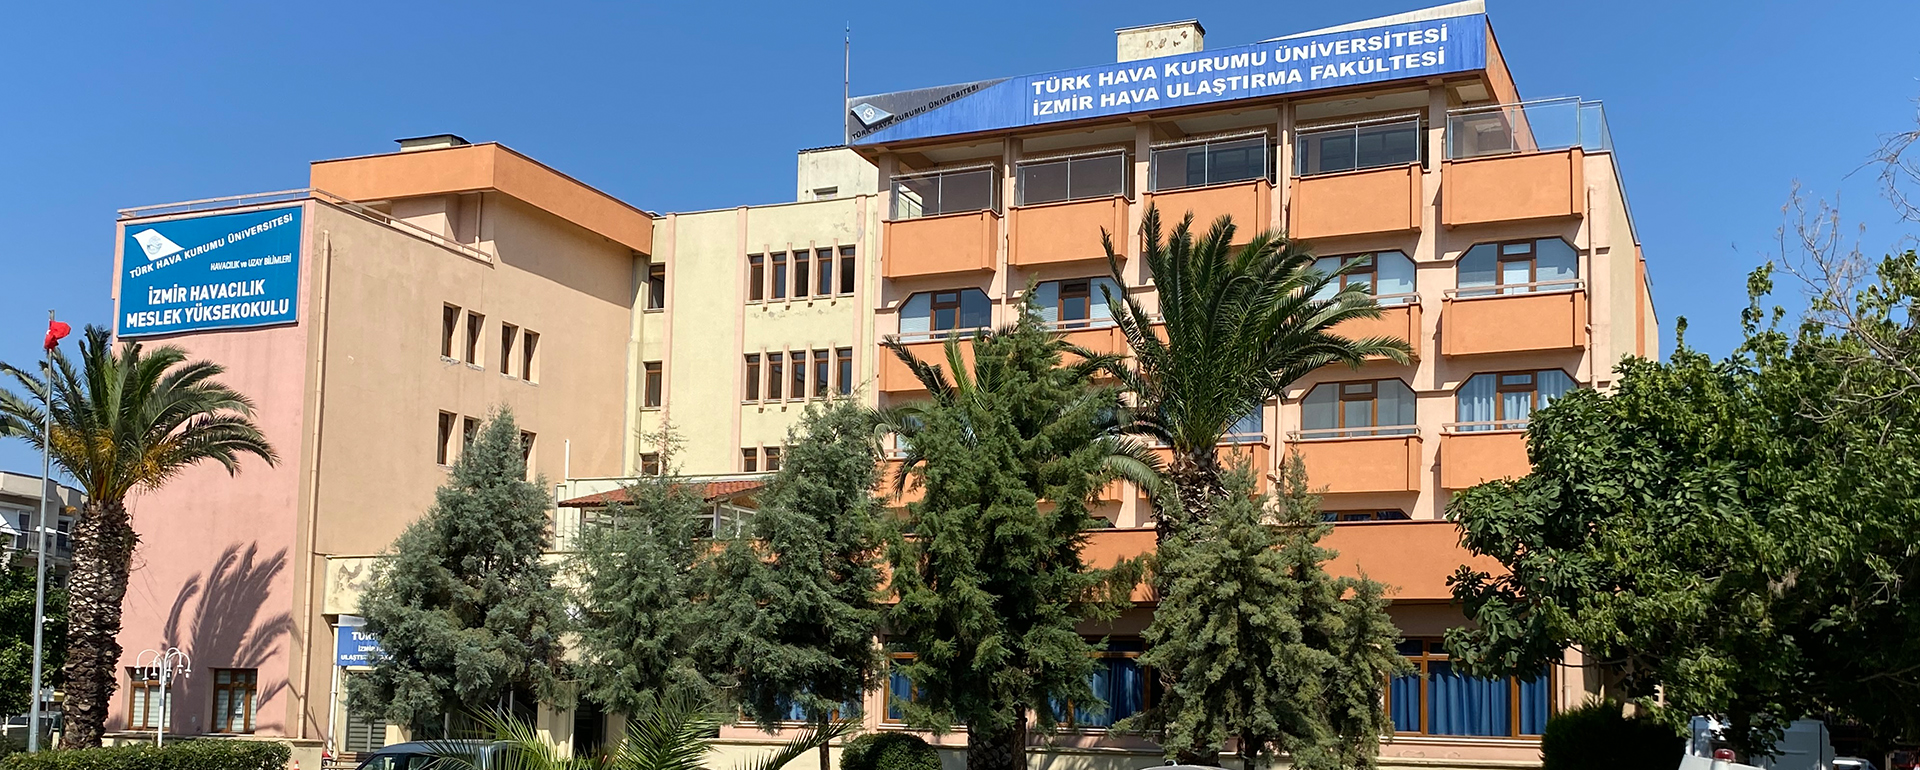 İzmir Havacılık Meslek Yüksekokulu